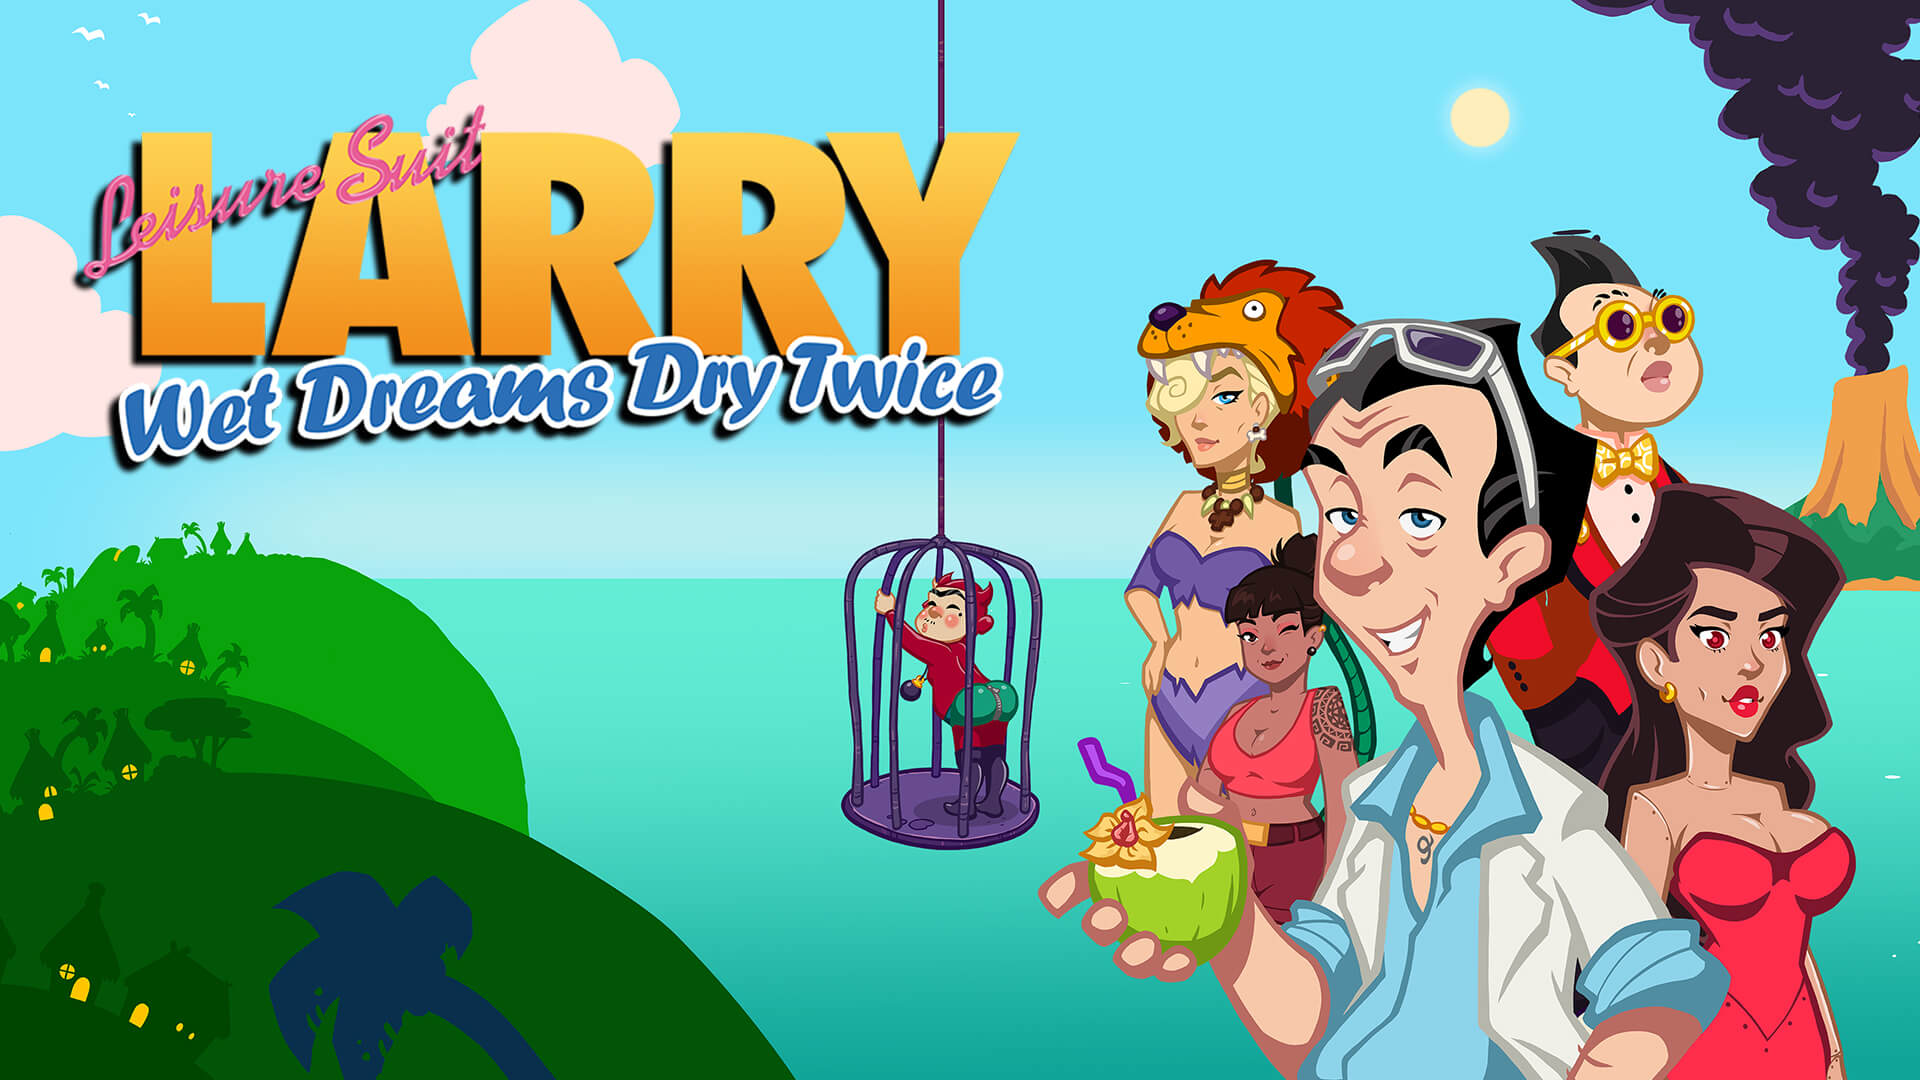 Larry wet. Приключения Ларри. Leisure Suit Larry - wet Dreams Dry twice. Игра похождения Ларри. (Ps4) Leisure Suit Larry: wet Dreams Dry twice (н).